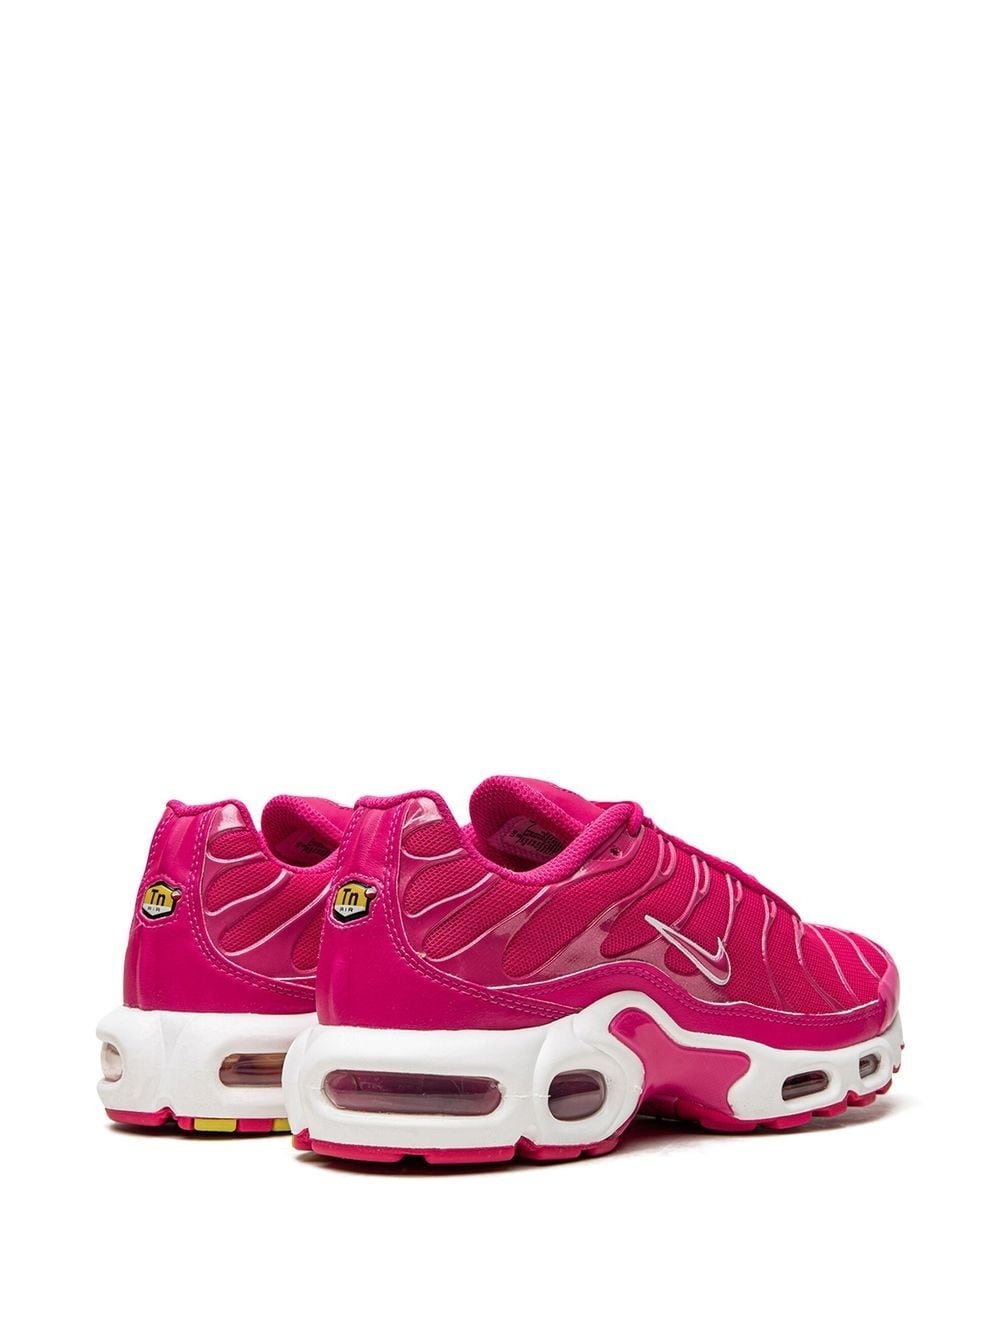 Air Max Plus "Hot Pink" sneakers - 3